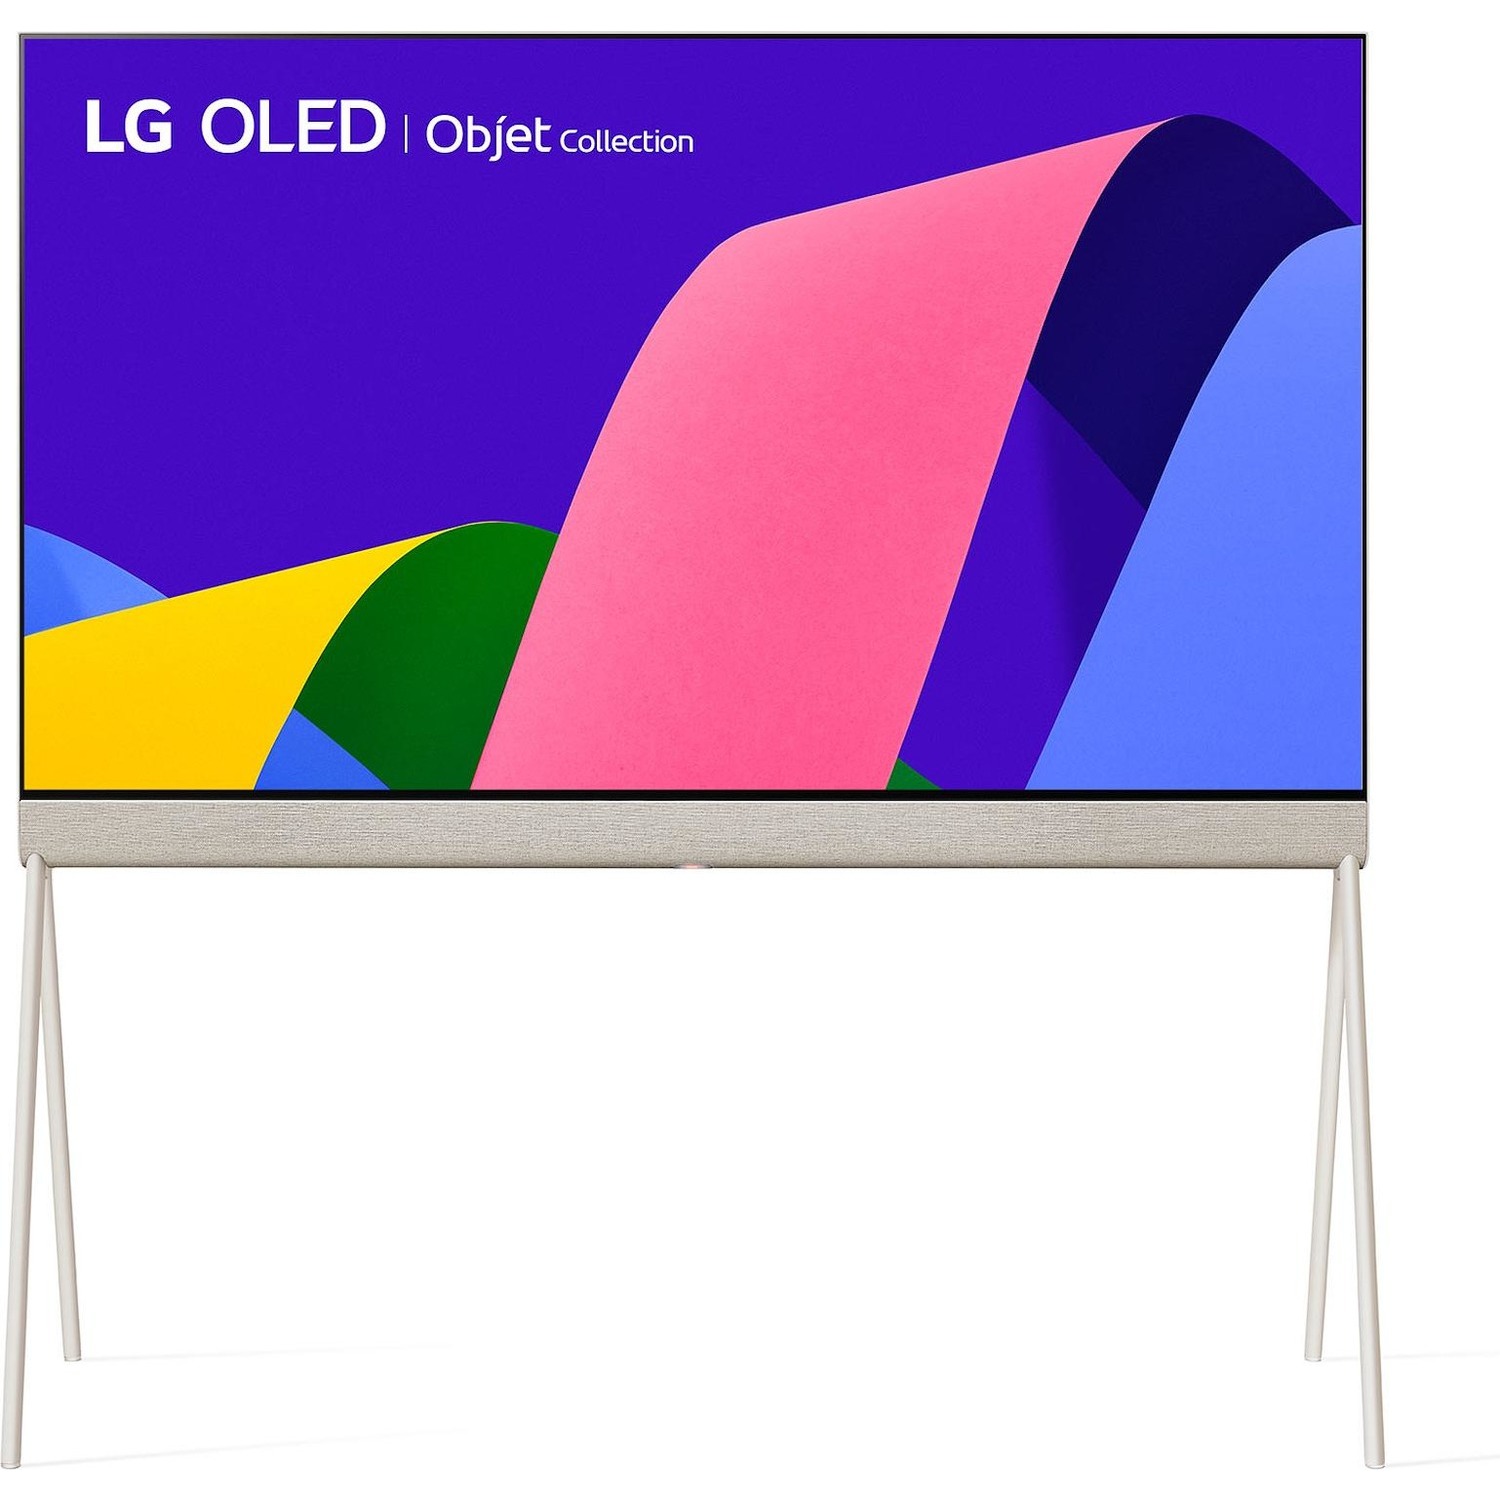 Immagine per TV smart 4K Lifestyle LG OLED Posè 55" 55LX1Q6LA  Objet Collection da DIMOStore